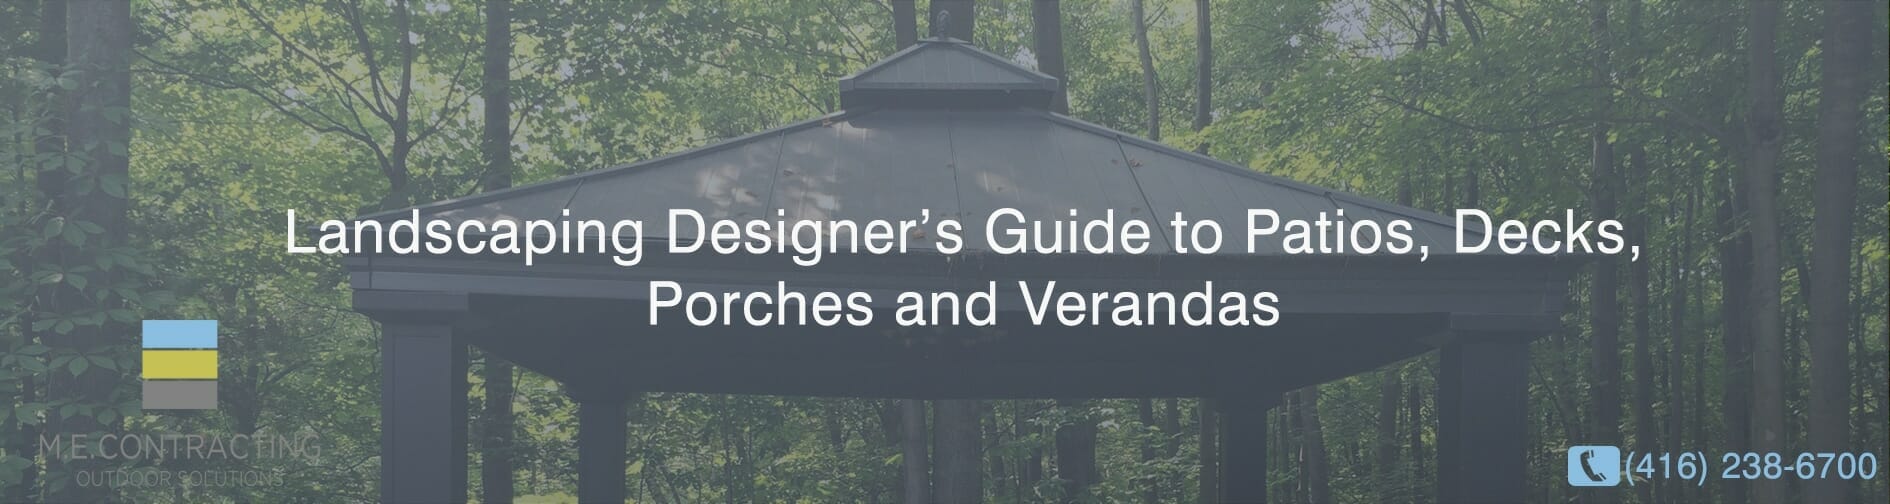 A Landscaping Designer’s Guide to Patios, Decks, Porches and Verandas